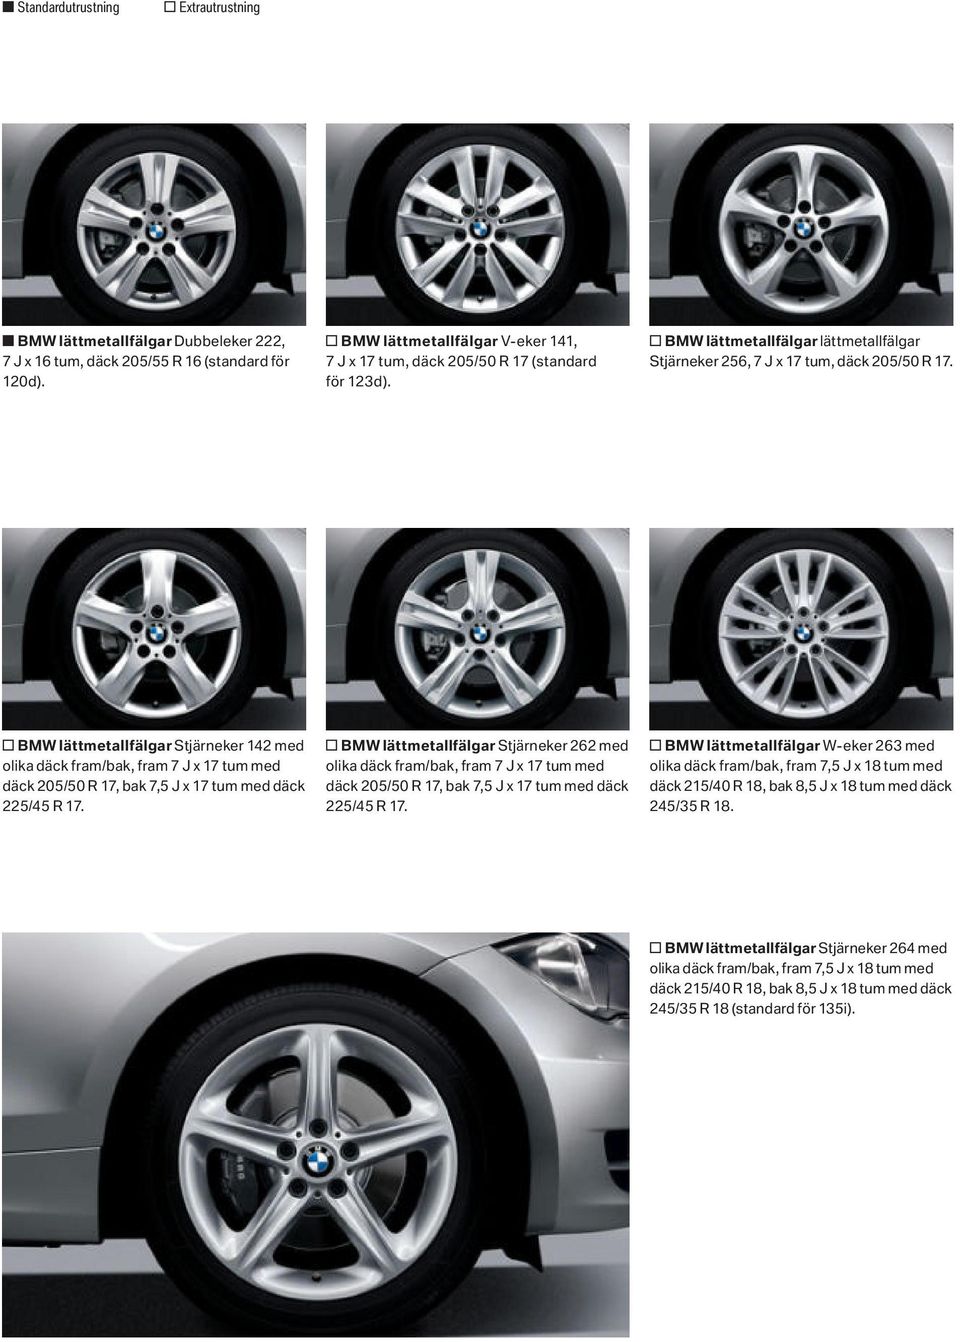 o BMW lättmetallfälgar Stjärneker 142 med olika däck fram/bak, fram 7 J x 17 tum med däck 205/50 R 17, bak 7,5 J x 17 tum med däck 225/45 R 17.